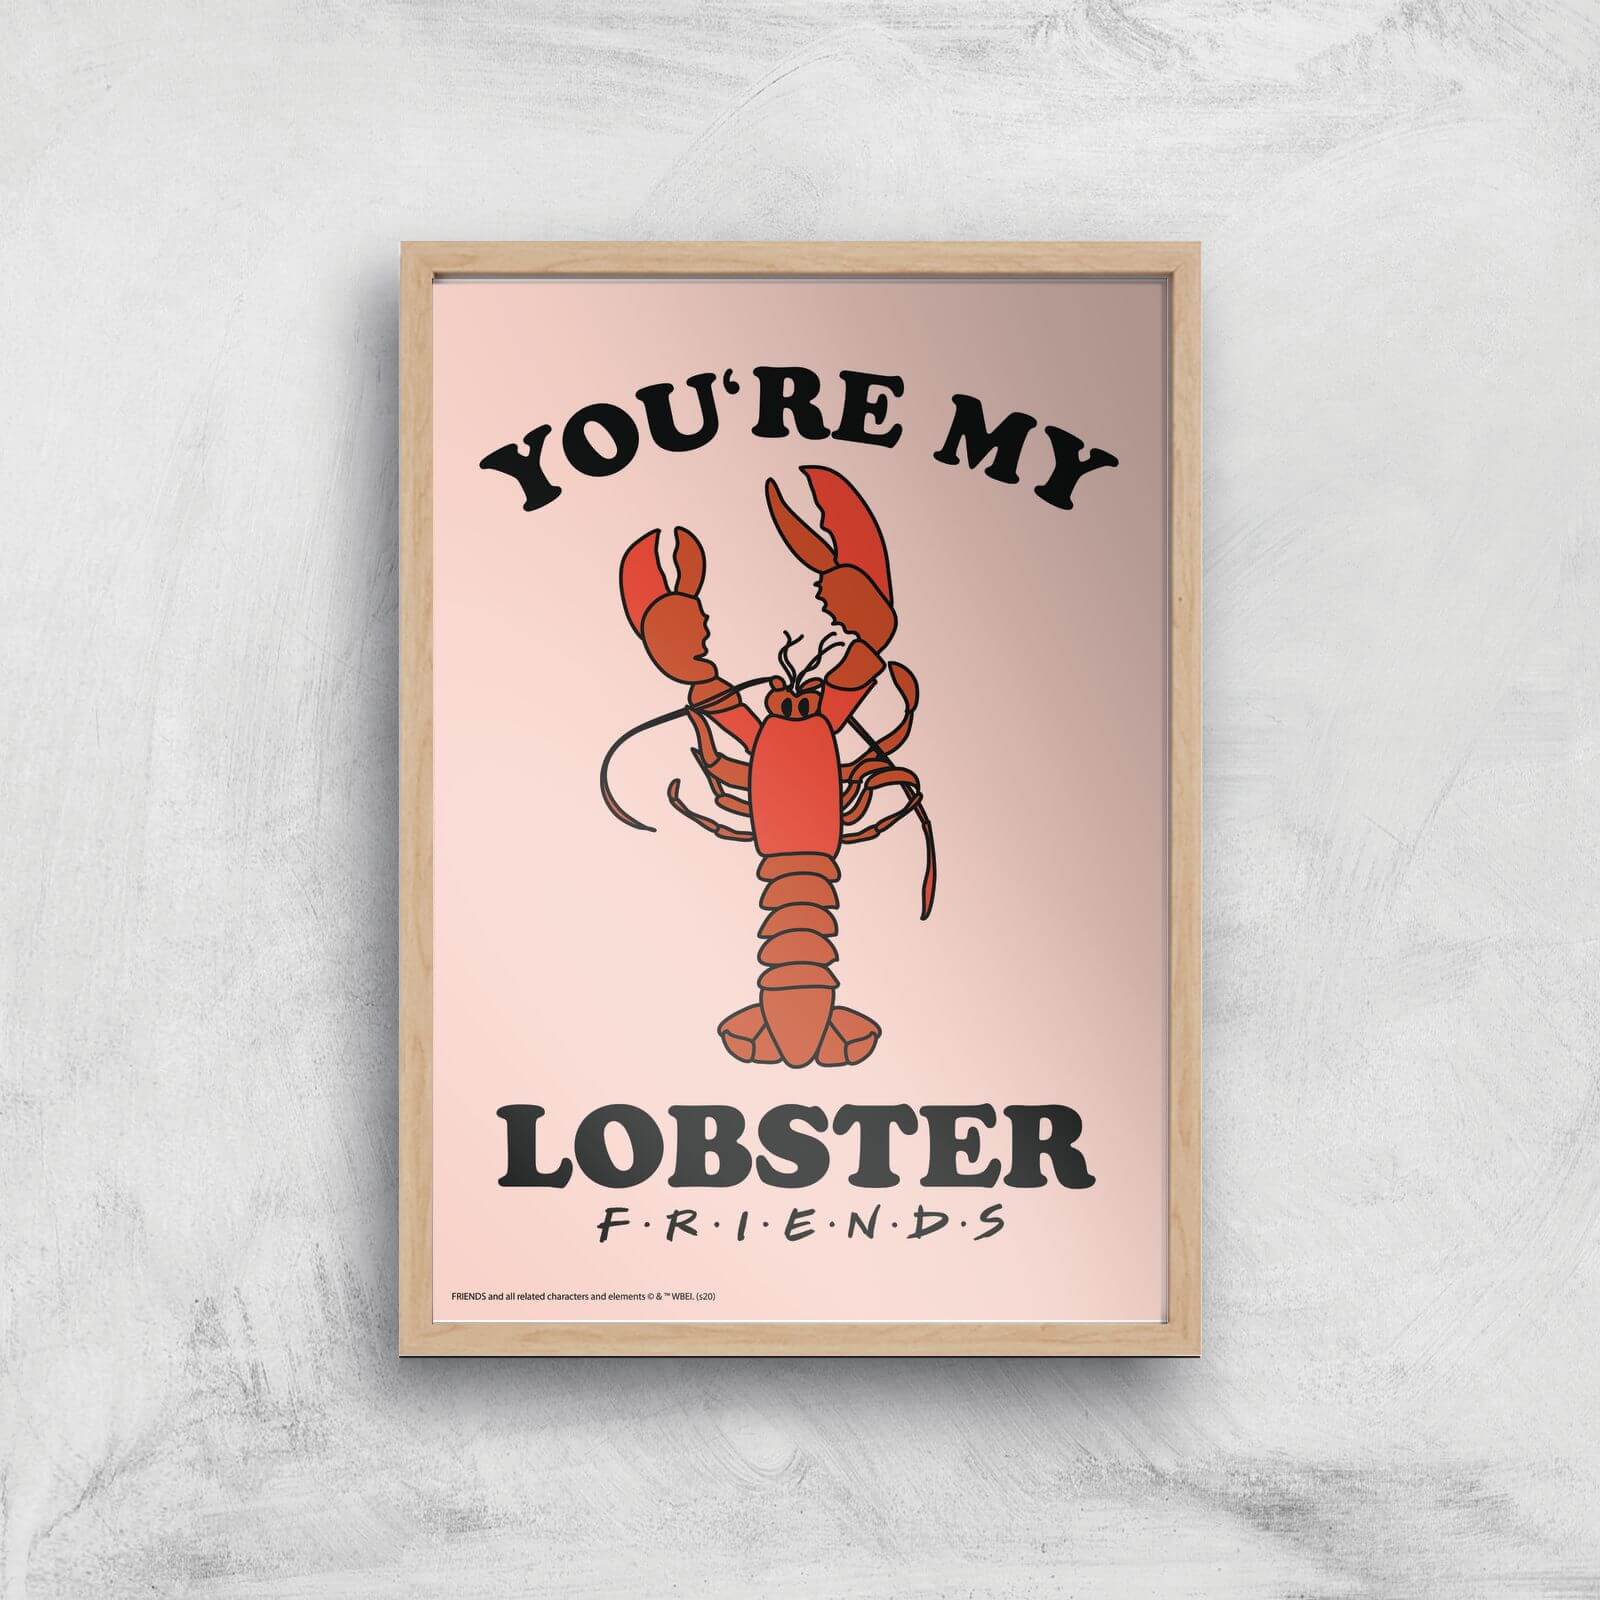 Friends Lobster Giclee Art Print - A4 - Wooden Frame